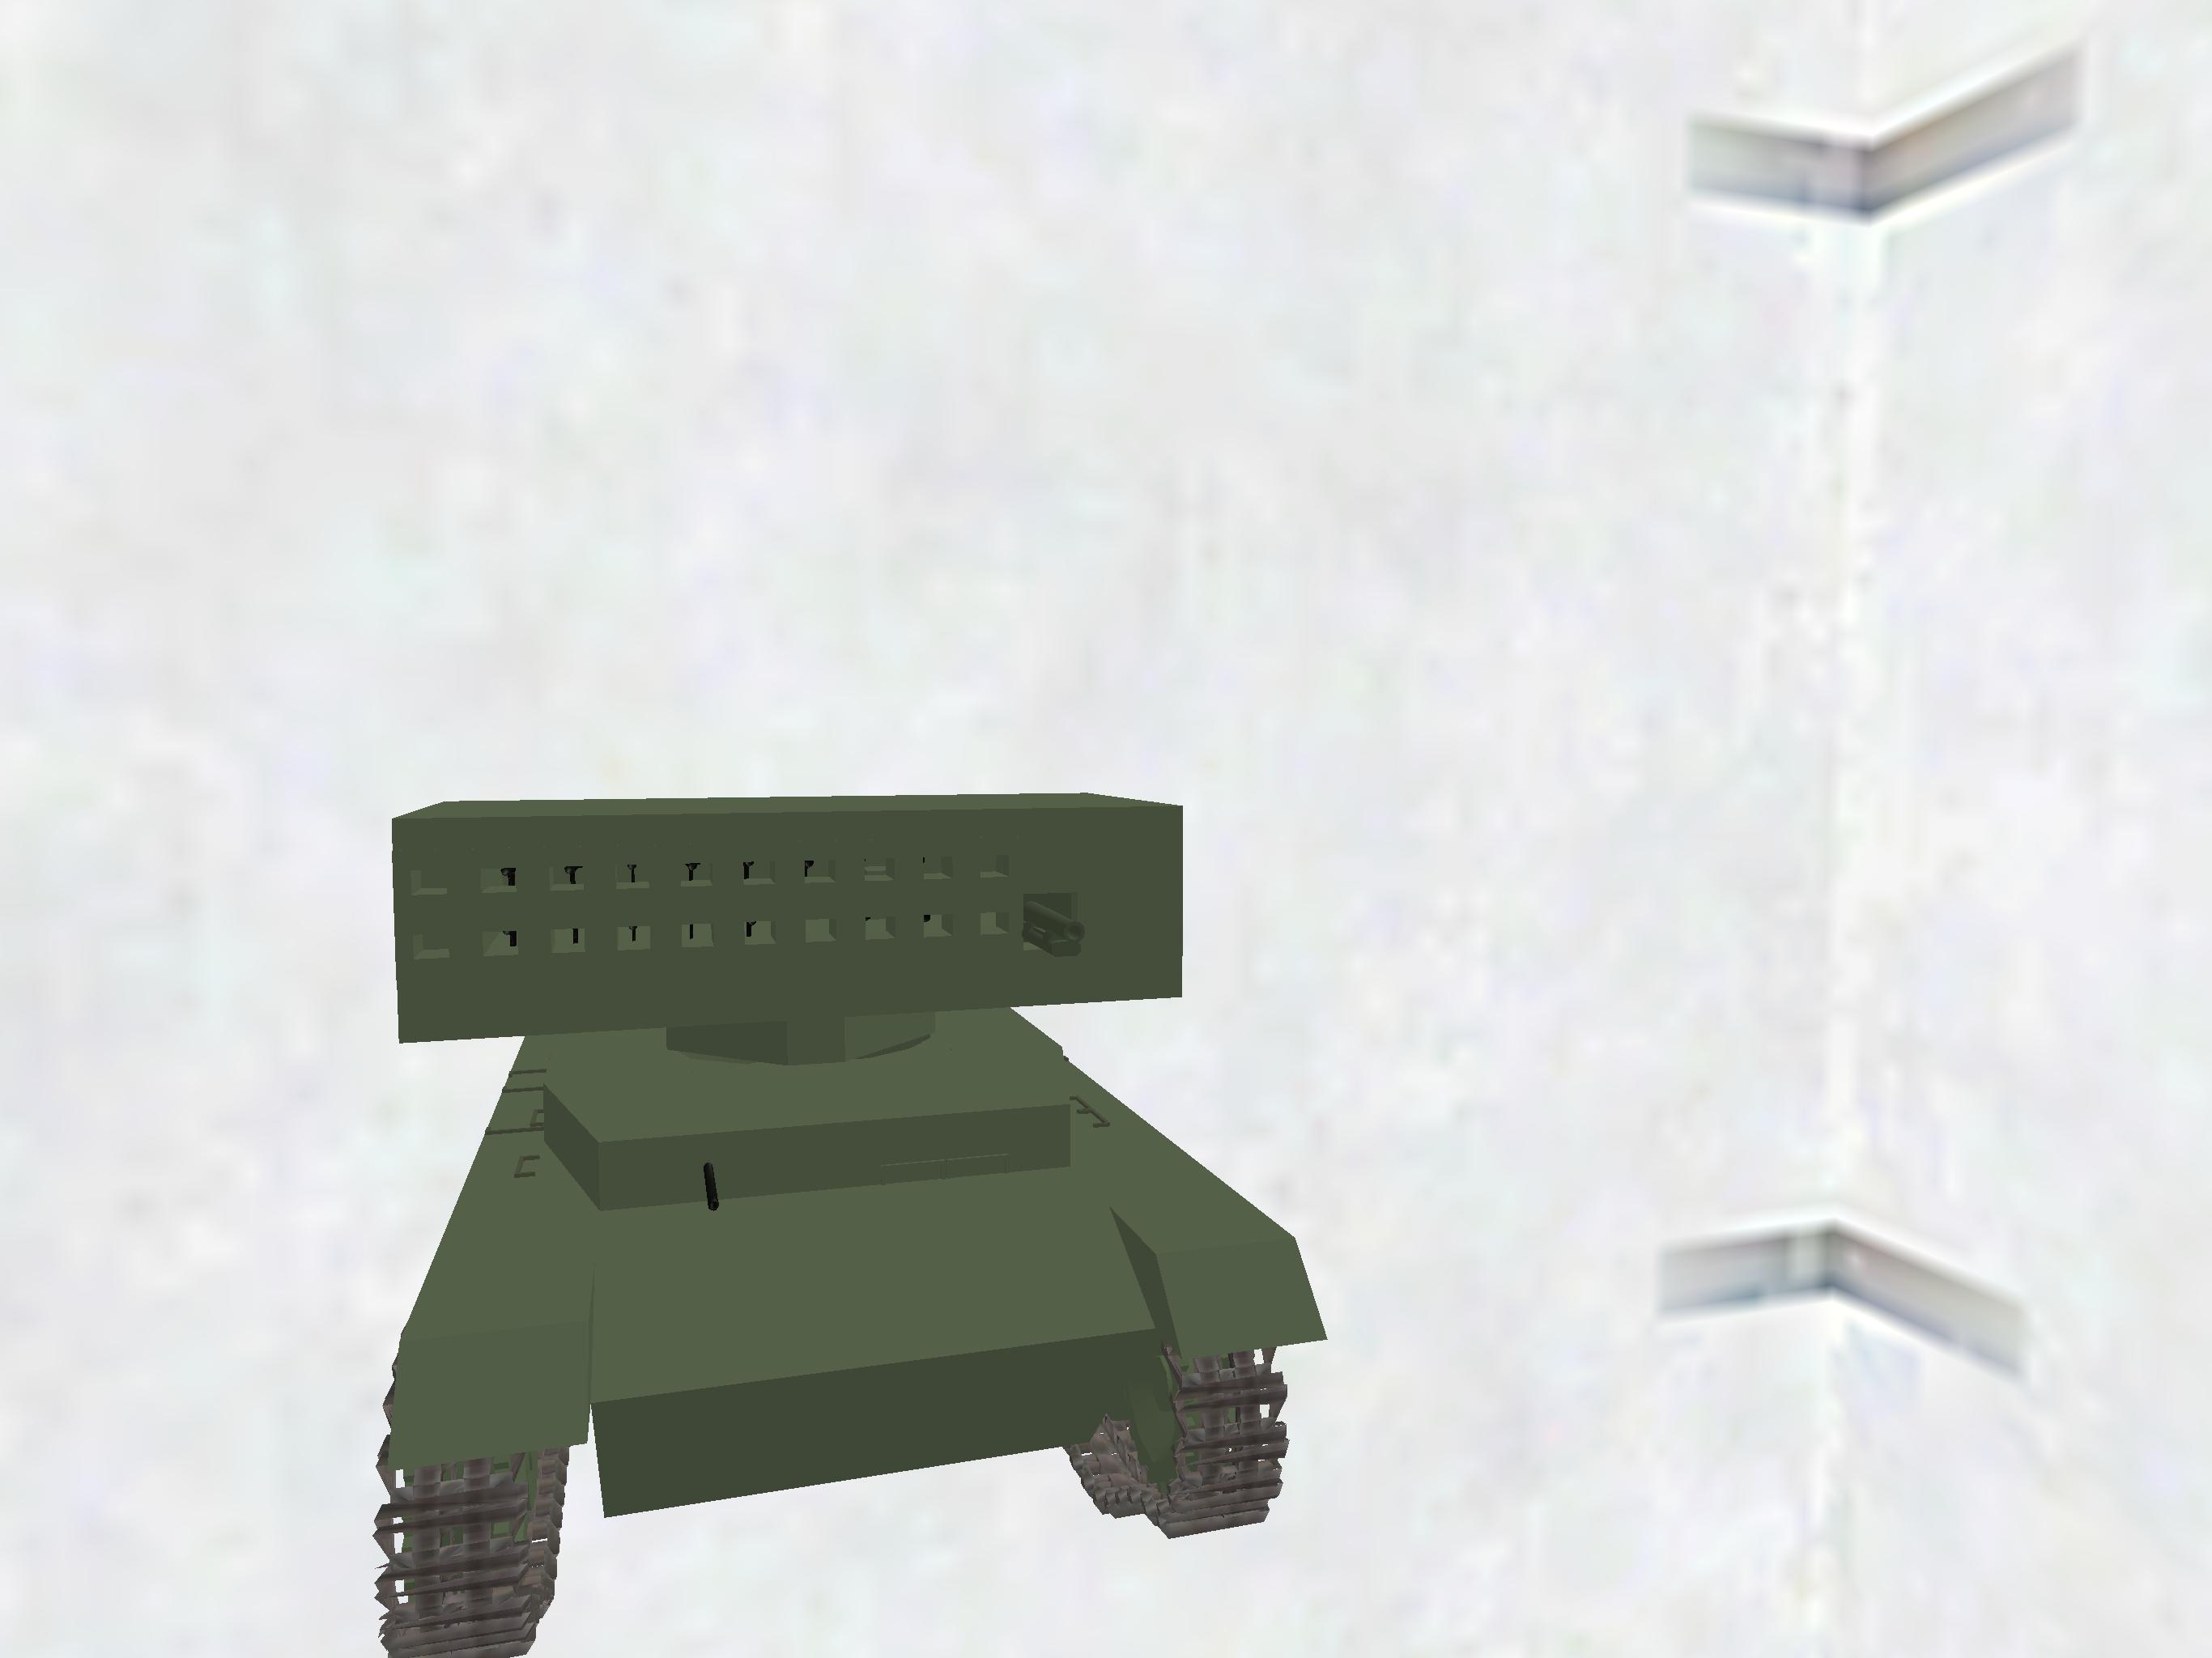 T-34 rocket